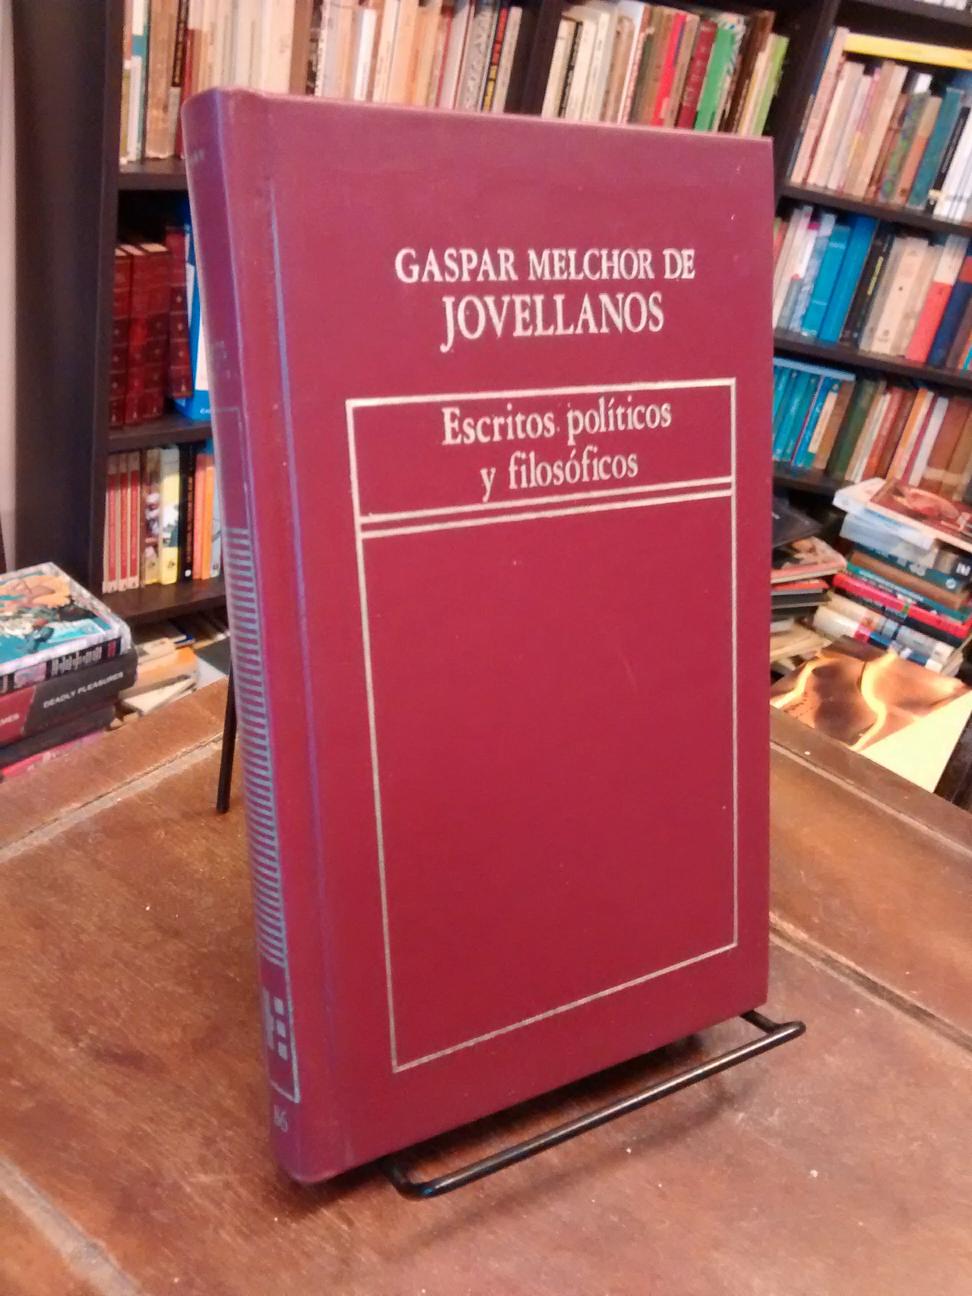 Escritos políticos y filosóficos - Gaspar Melchor de Jovellanos